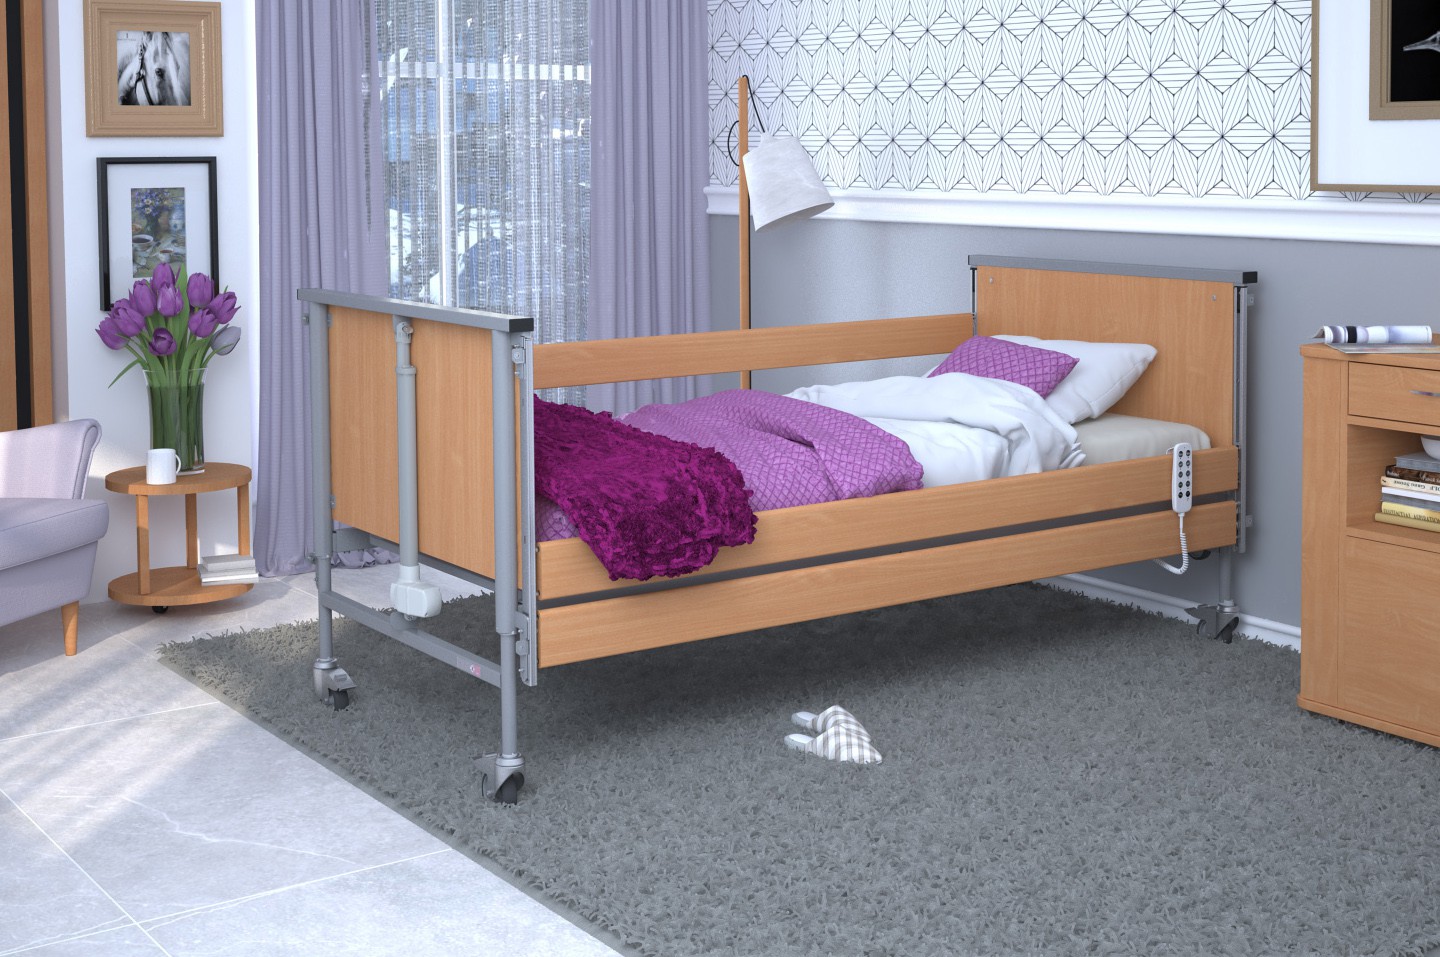 Łóżko rehabilitacyjne TAURUS 2 regulowane RehaBed : Rodzaj leża - Drewniane, Standardowe kolory ramy łóżka - Buk, Stolik typu Tablet: - Tak, Wysięgnik (max odciążenie 80 kg): - Tak